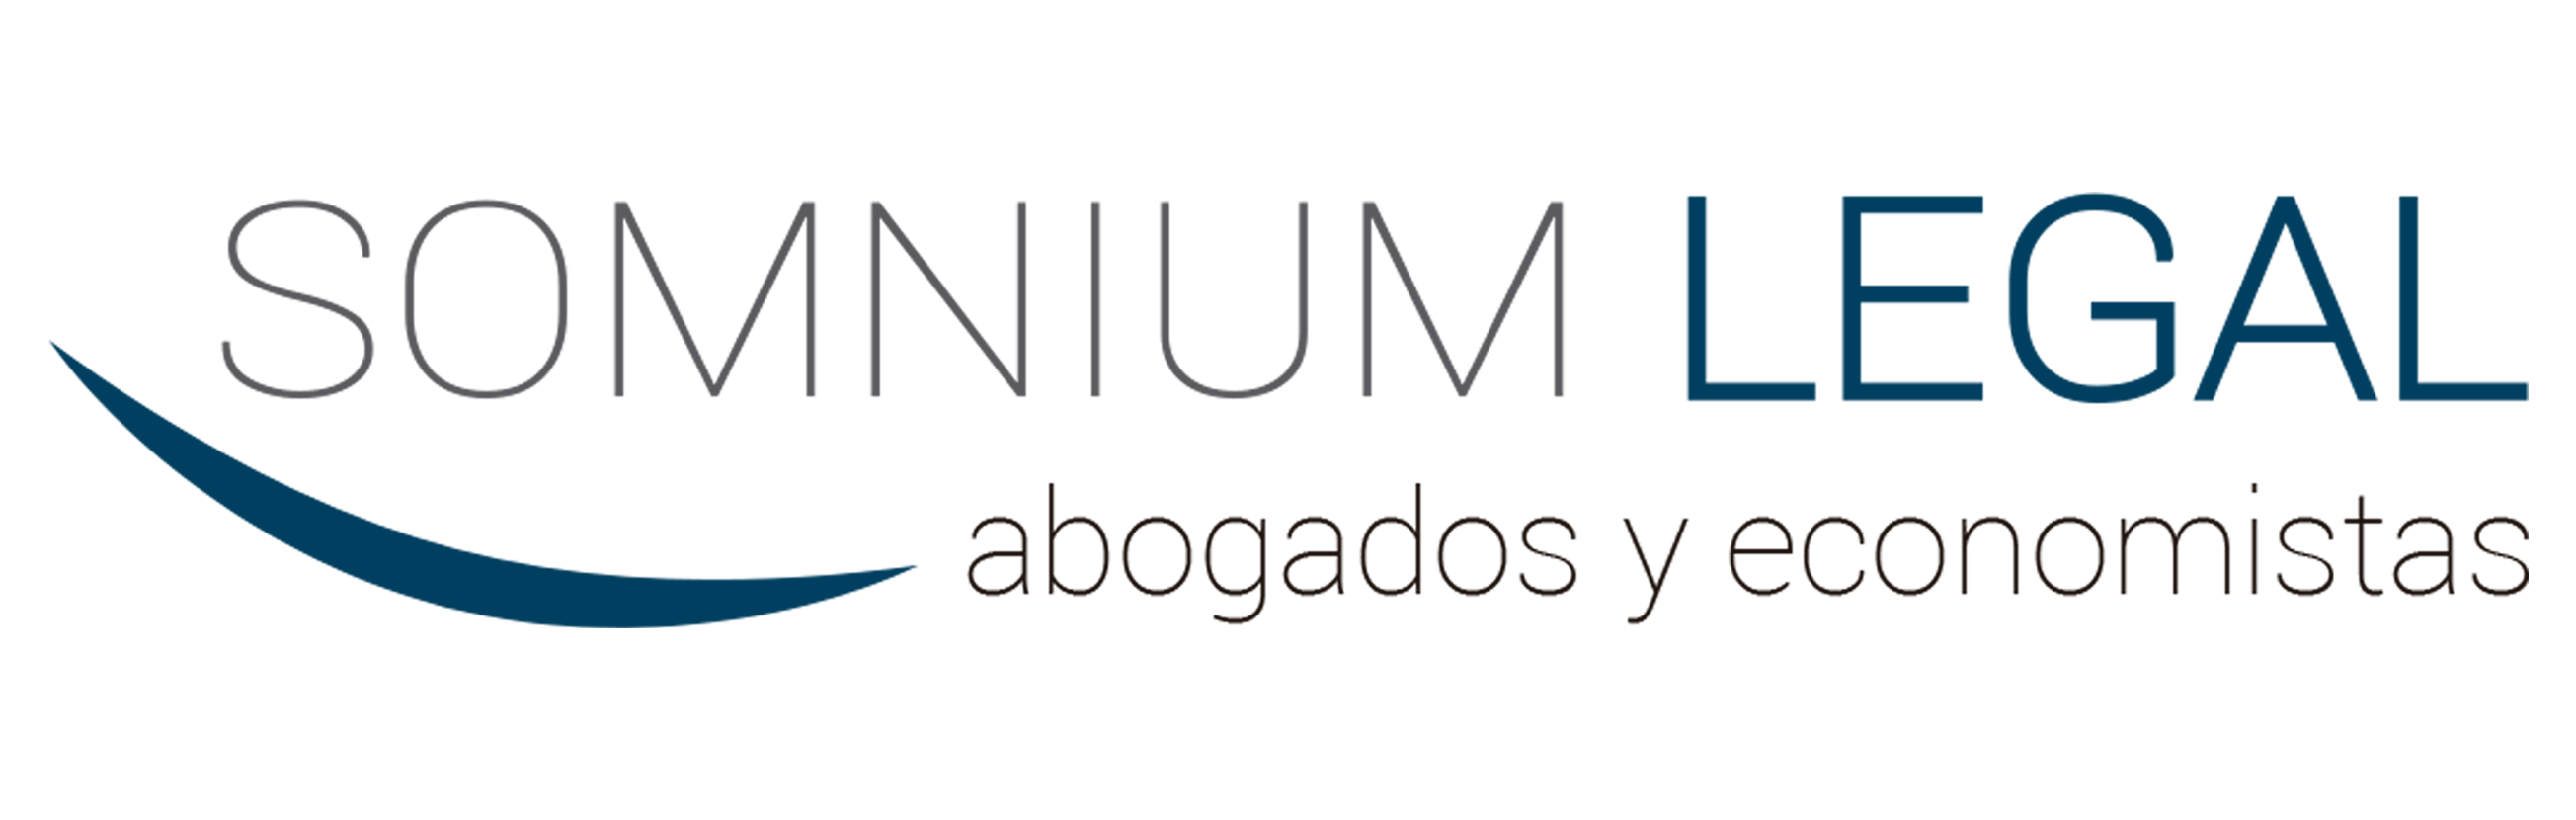 Logo de Somnium Legal: Nombre de la empresa 'SOMNIUM LEGAL', debajo 'Abogados y Economistas', con un cuarto de círculo a la izquierda.